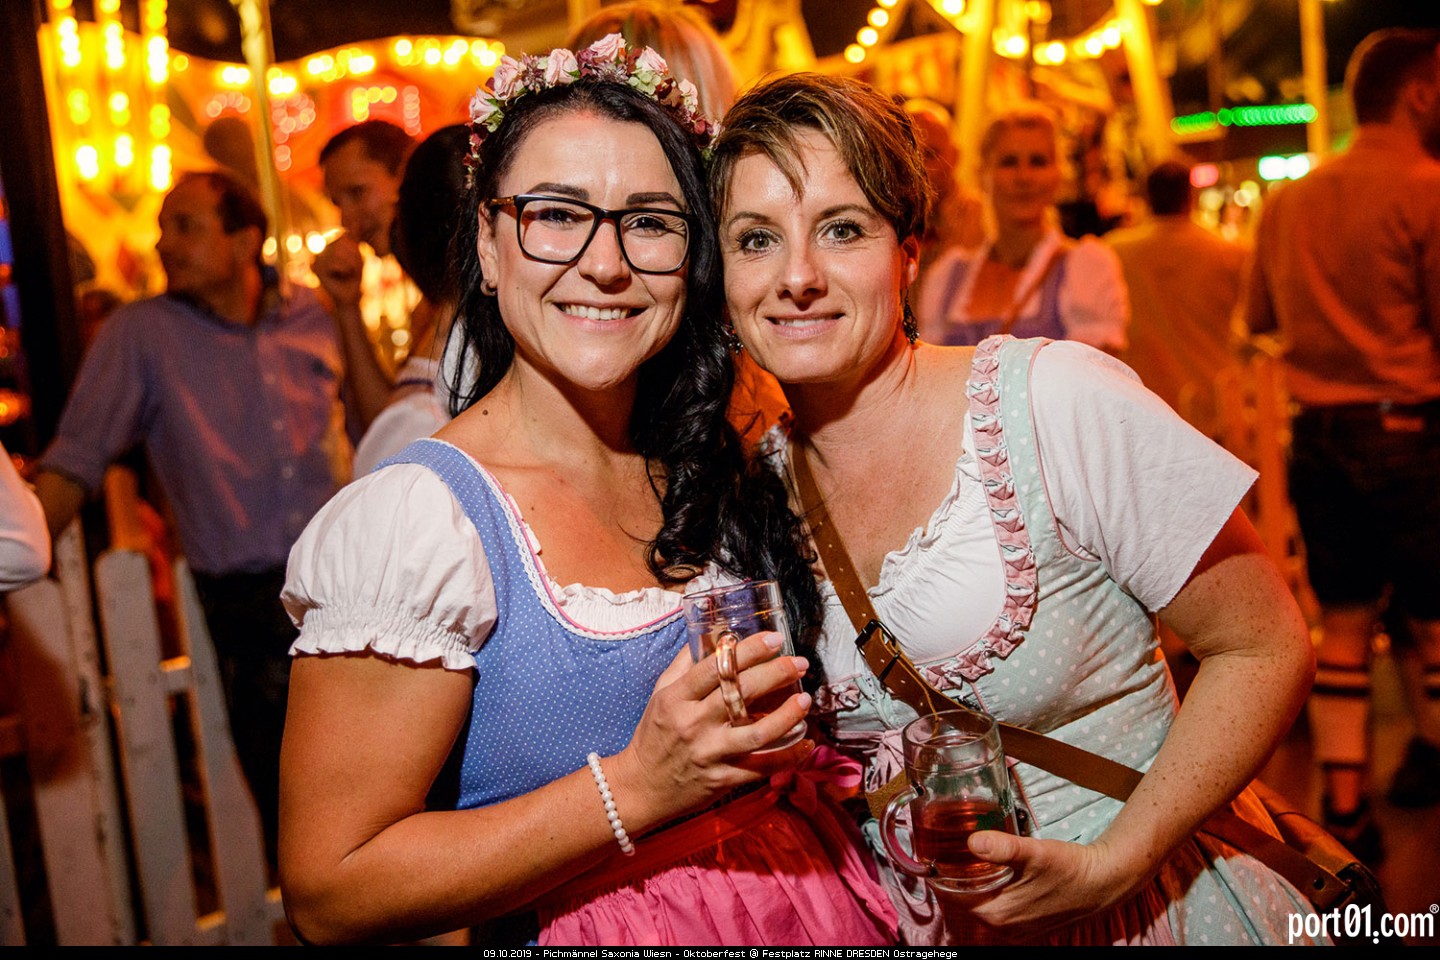 Pichmännel Saxonia Wiesn - Oktoberfest